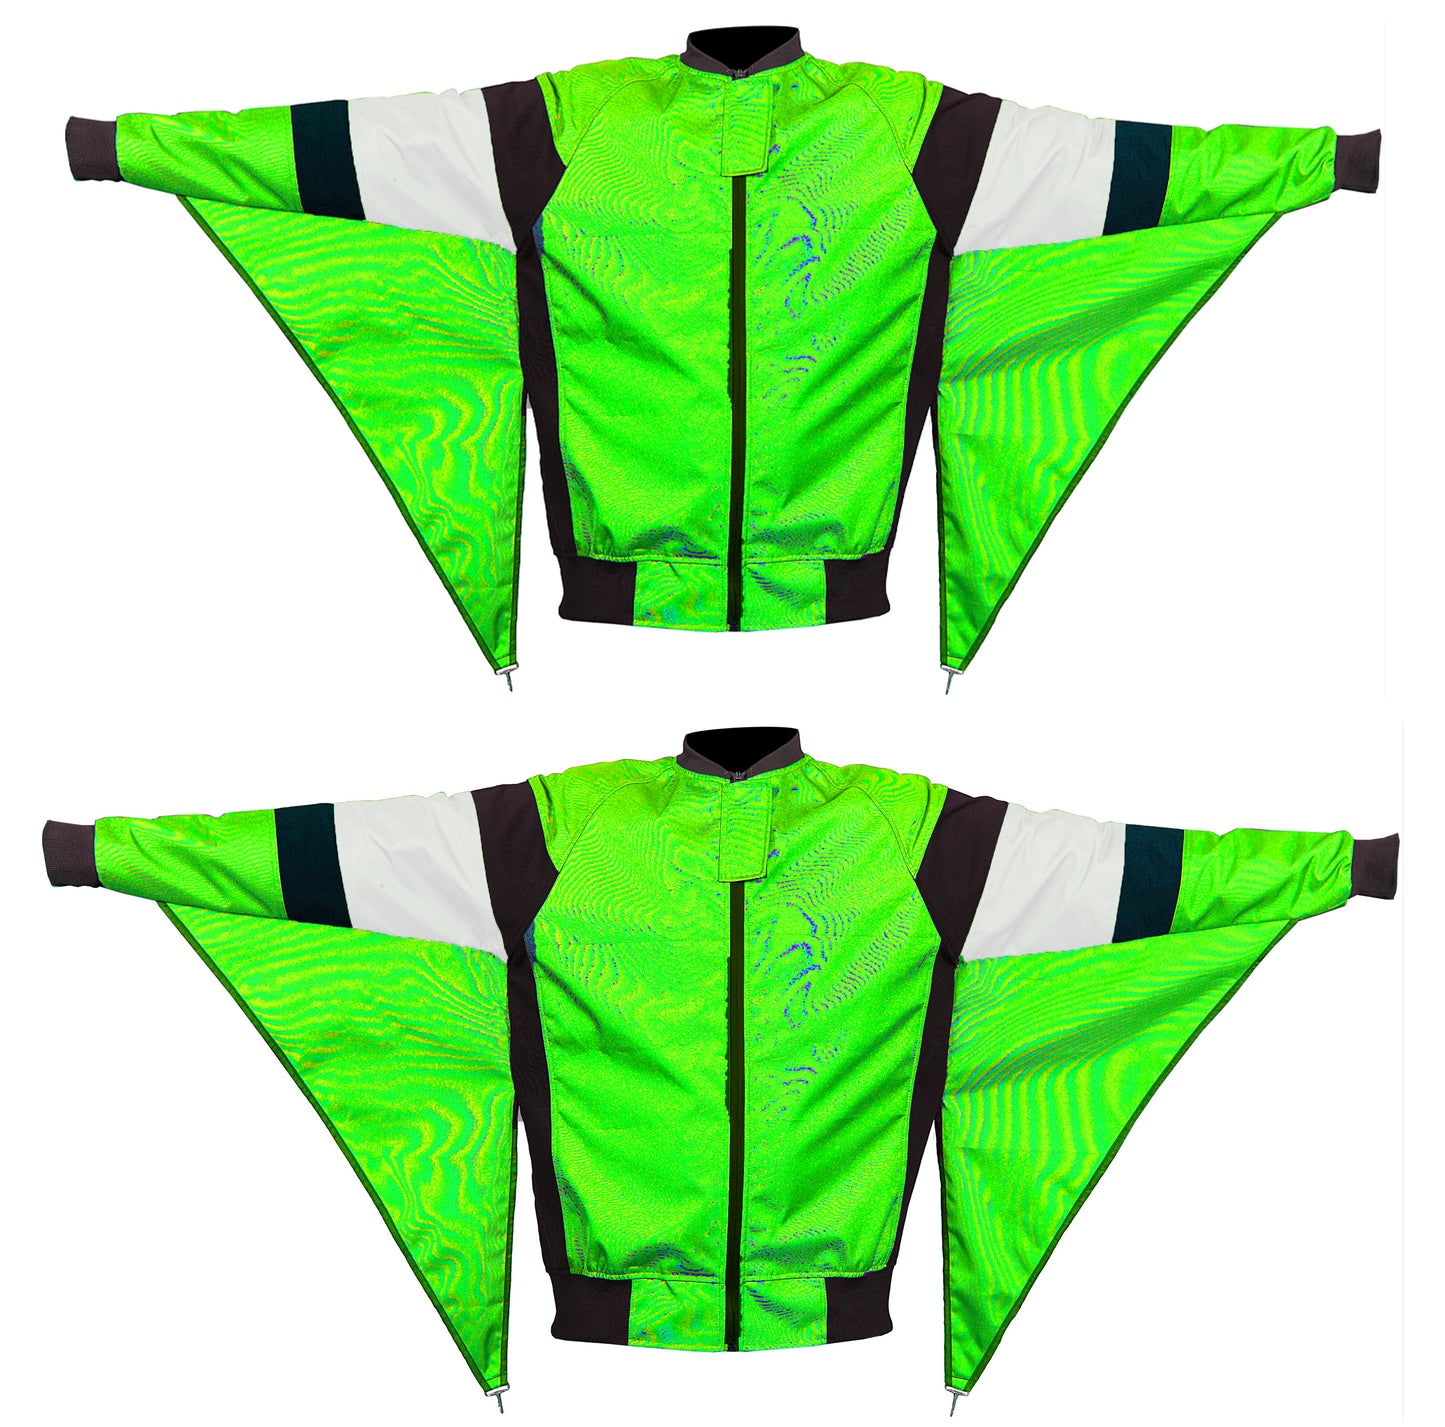 Unique Design Skydiving Camera jacket nd-027